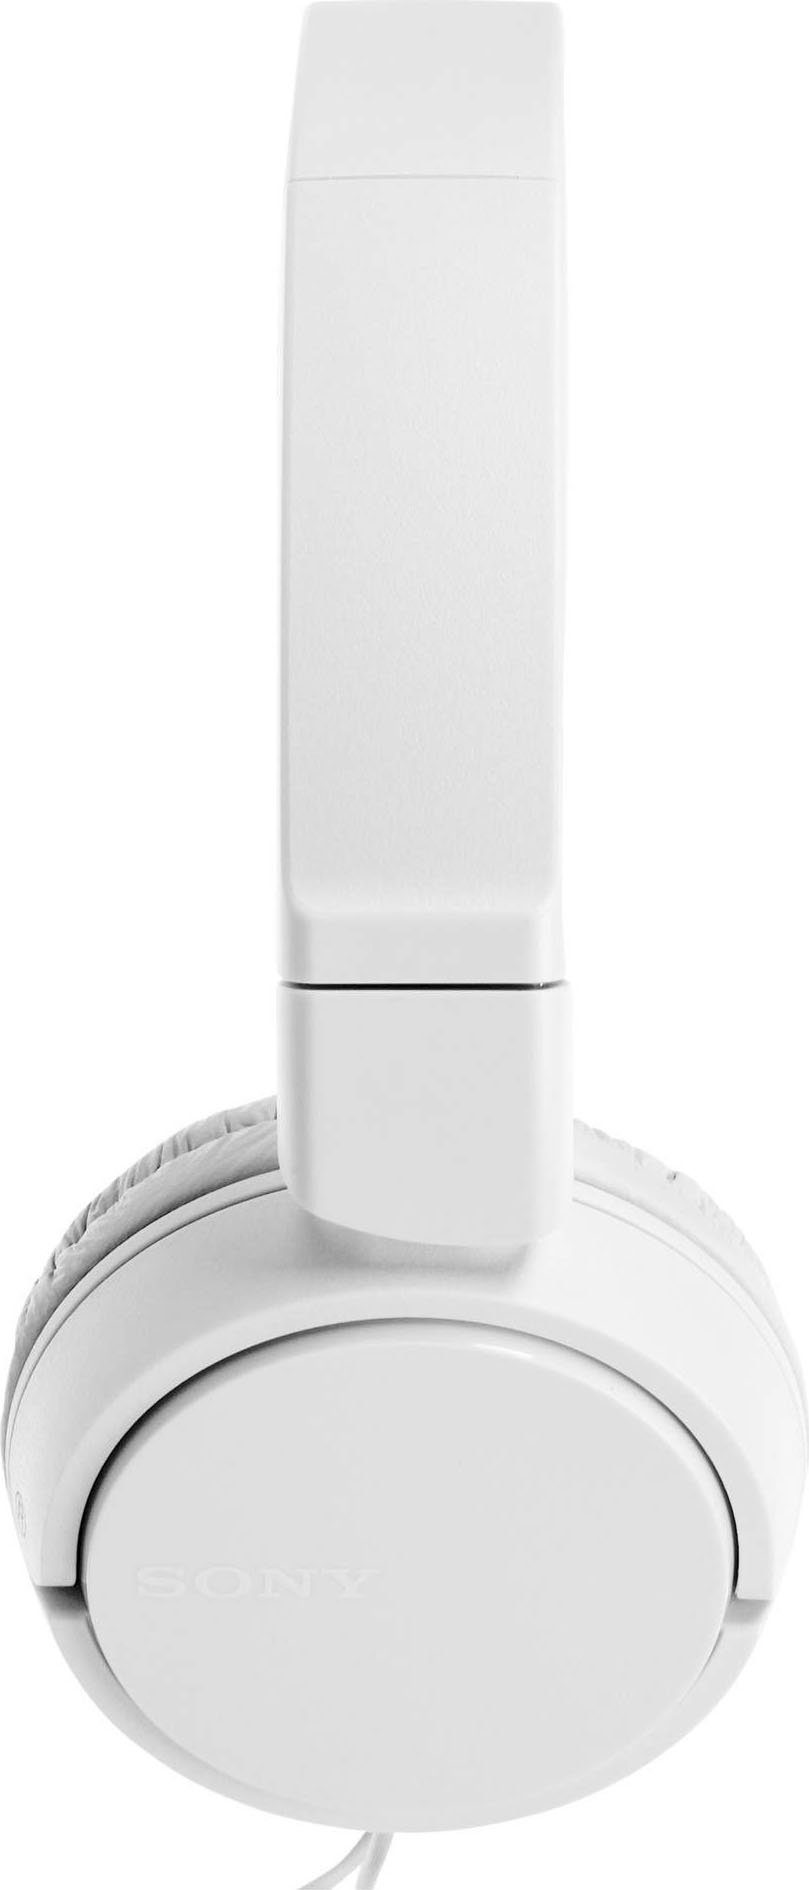 Sony weiß Anrufe On-Ear-Kopfhörer Musik, Headsetfunktion) integrierte und (Freisprechfunktion, Steuerung Faltbarer für mit MDR-ZX110AP